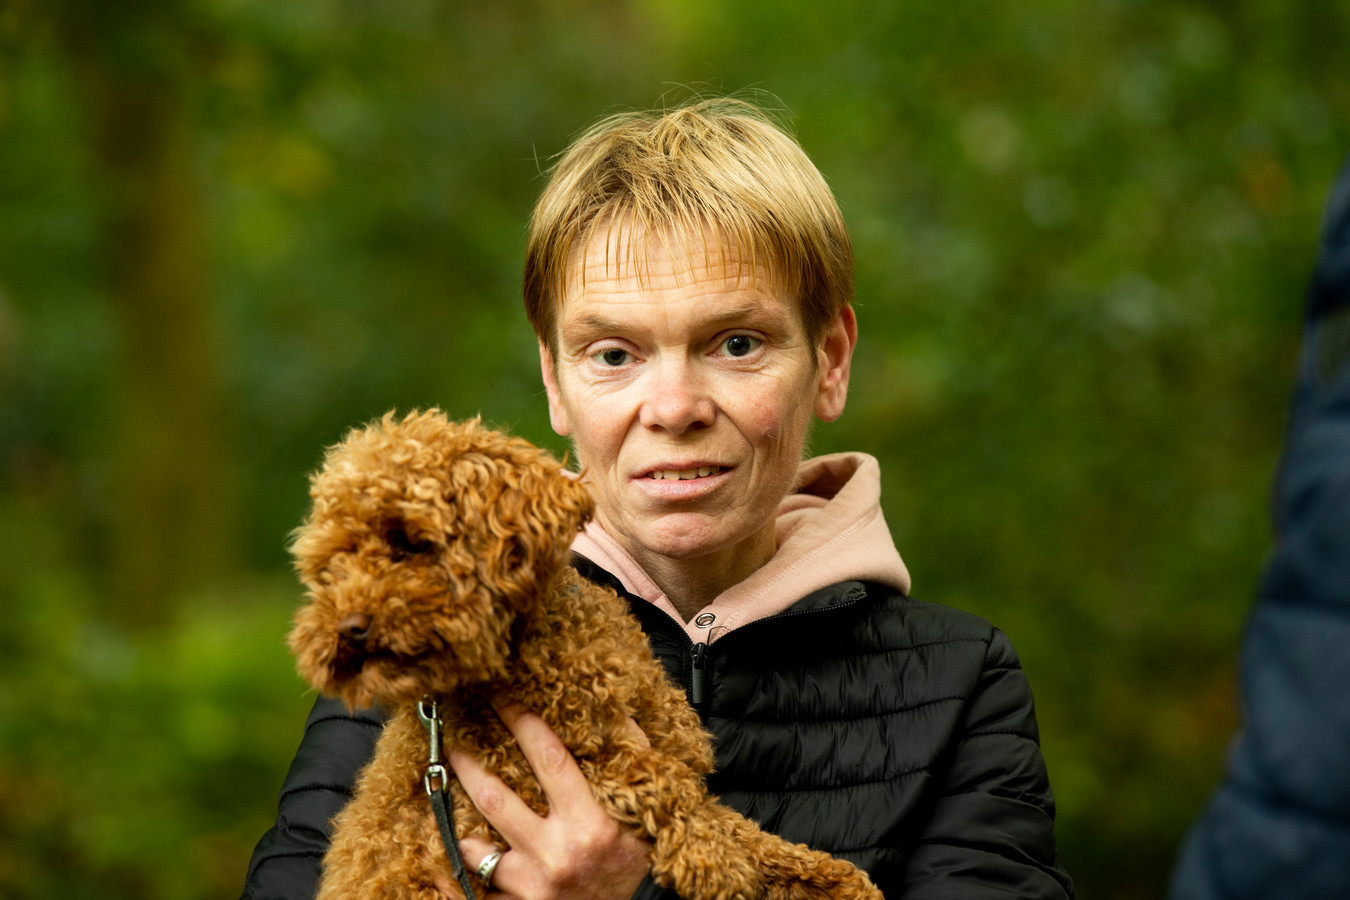 Simone Borgonjen, met haar hondje Teddy. ,,Ik durf nu even niet met Teddy dieper de bossen in. Wat nou als daar die giftige ballen liggen?’’